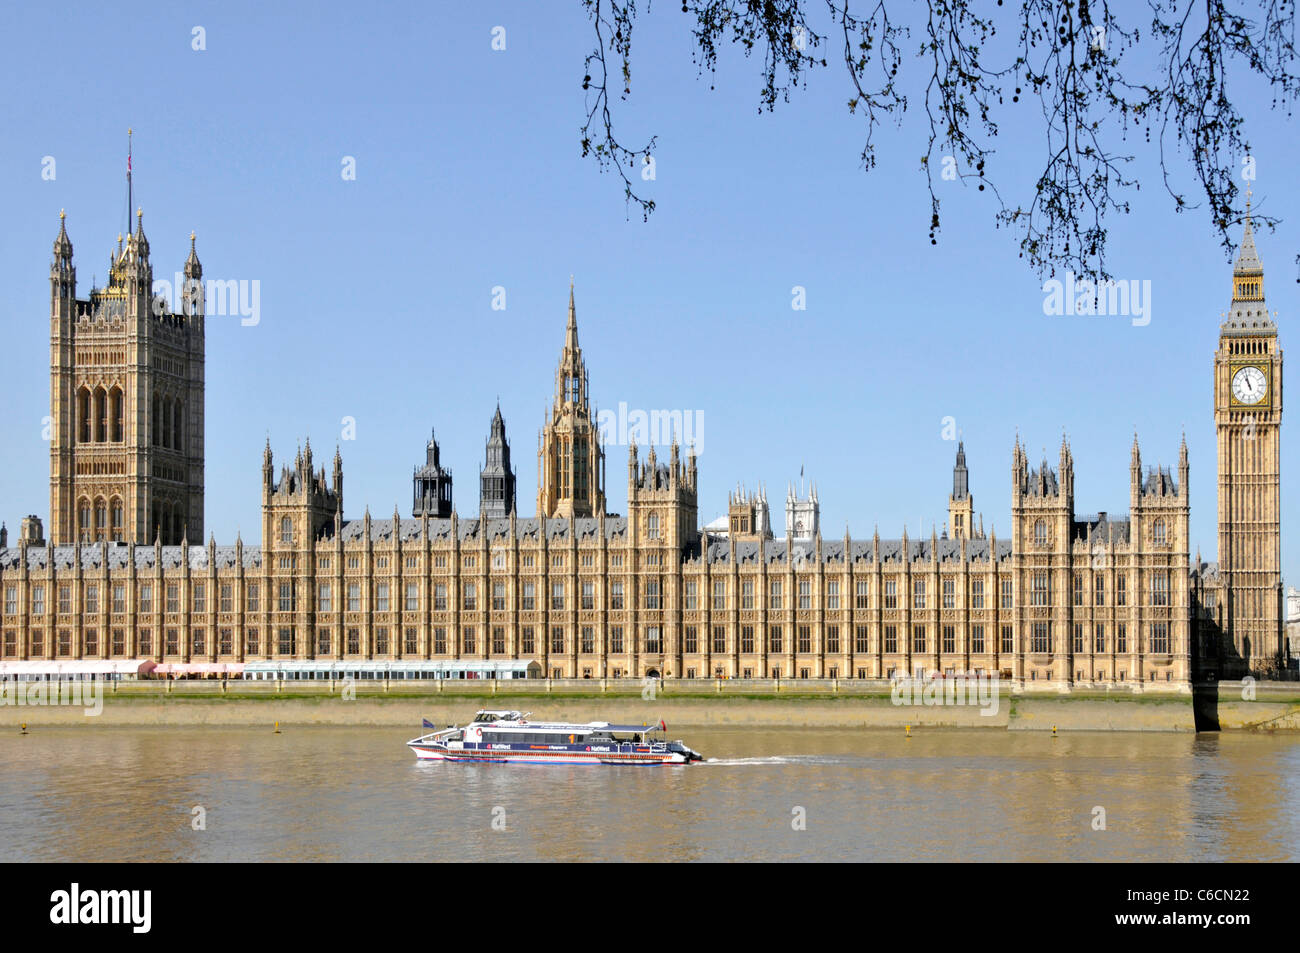 Thames Clipper öffentlicher Verkehr Flussbus am Flussufer des Big Ben & Houses of Parliament High Tide auf der Themse Westminster London, England, Großbritannien Stockfoto